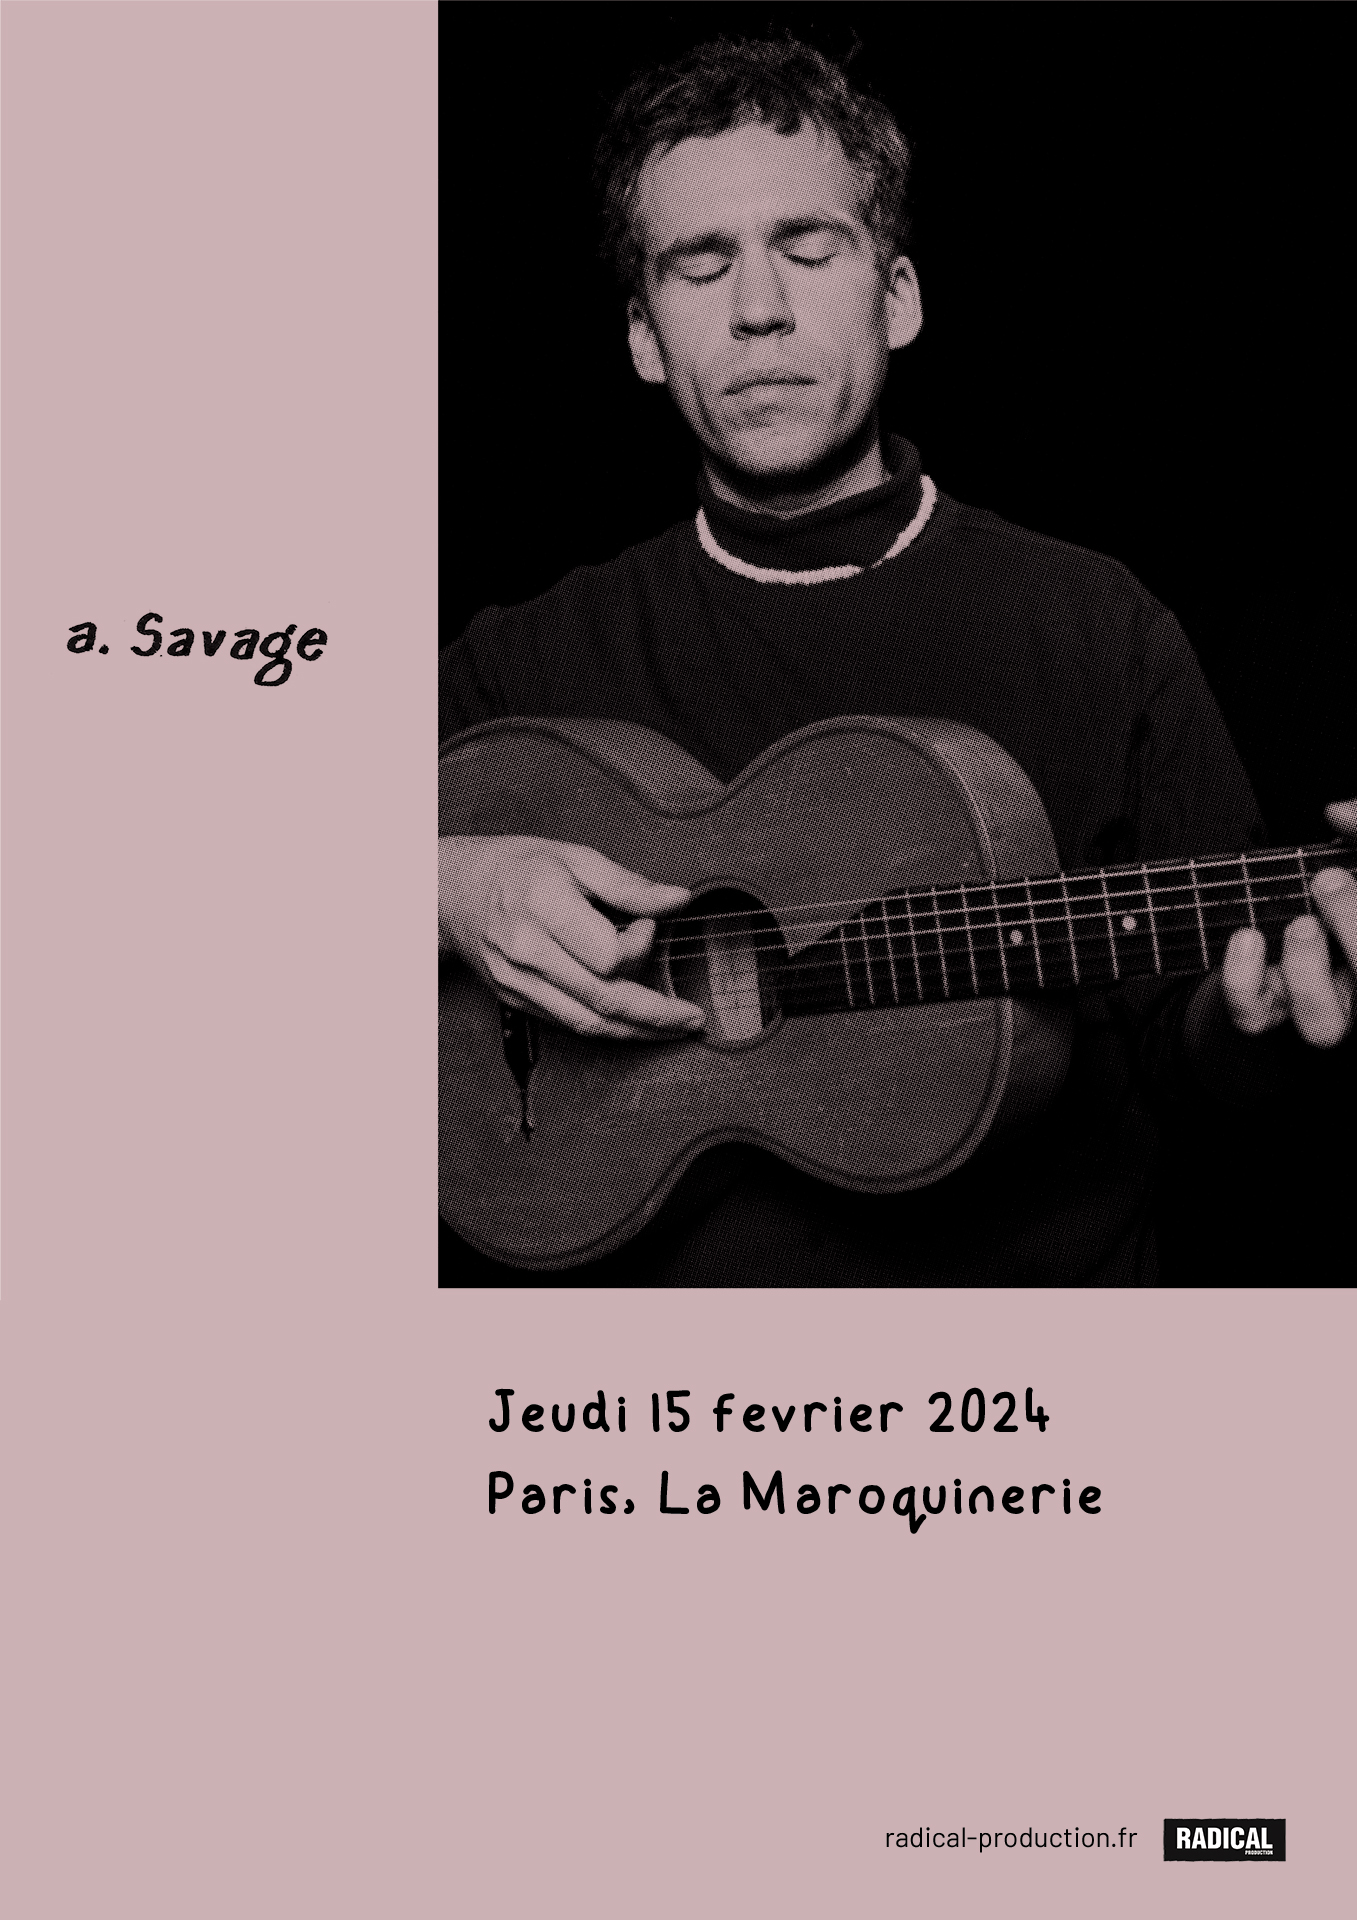 A. Savage - Maroquinerie, Paris - 15 février 2024